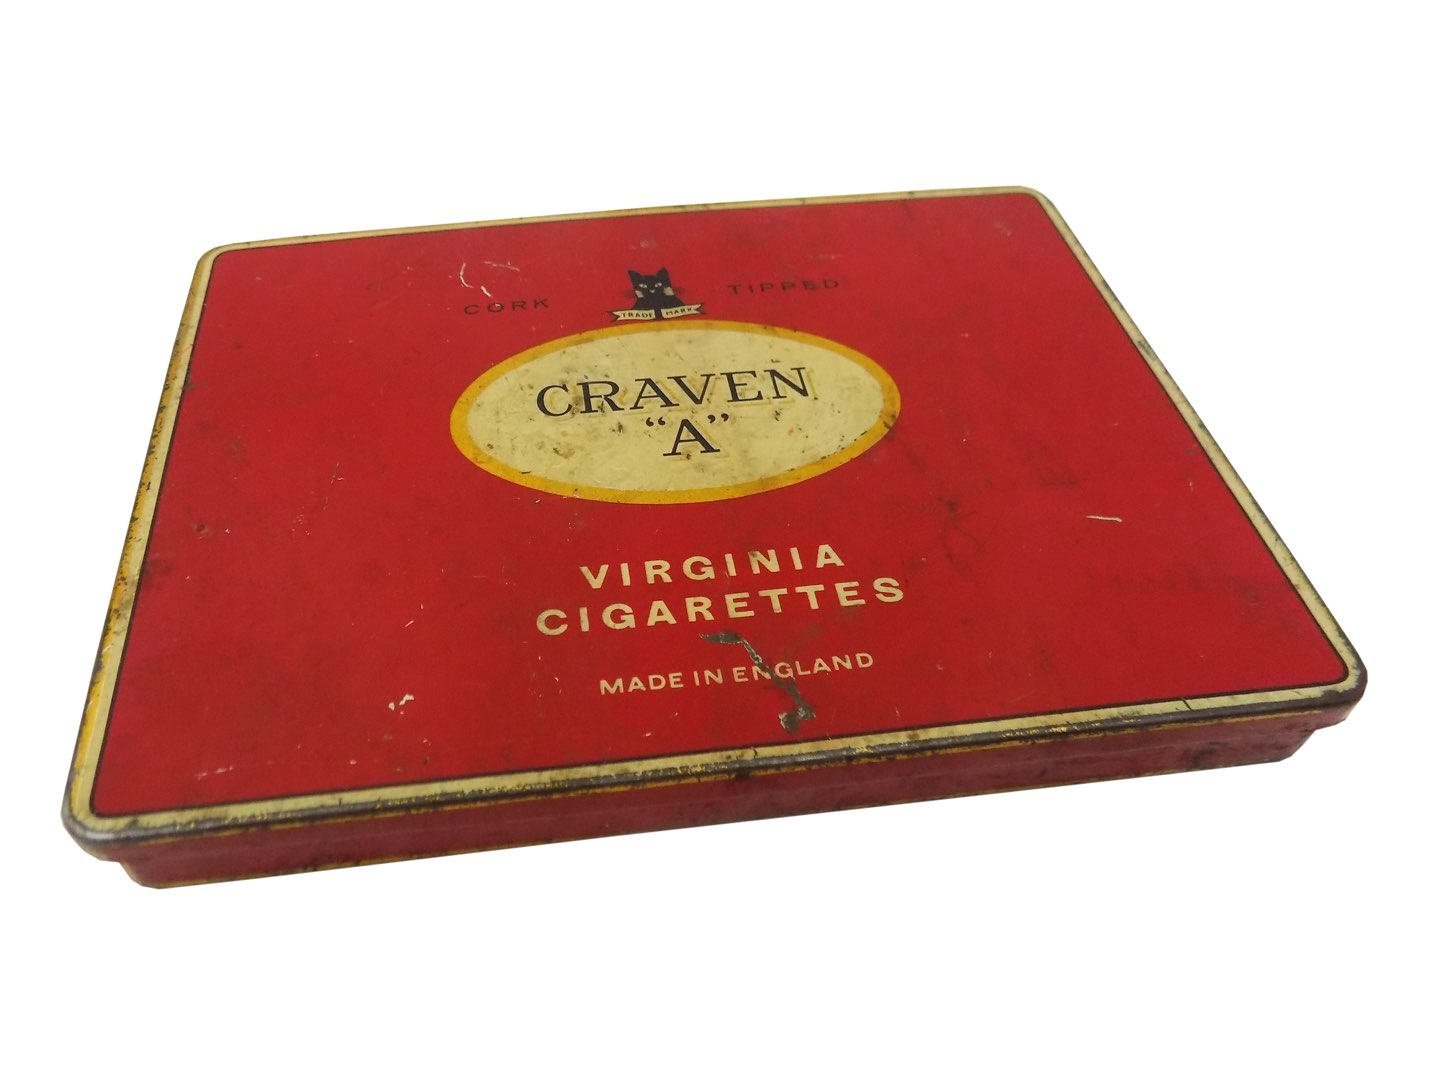 Blaszane pudełko po cygaretkach VIRGINIA England zdjęcie 1